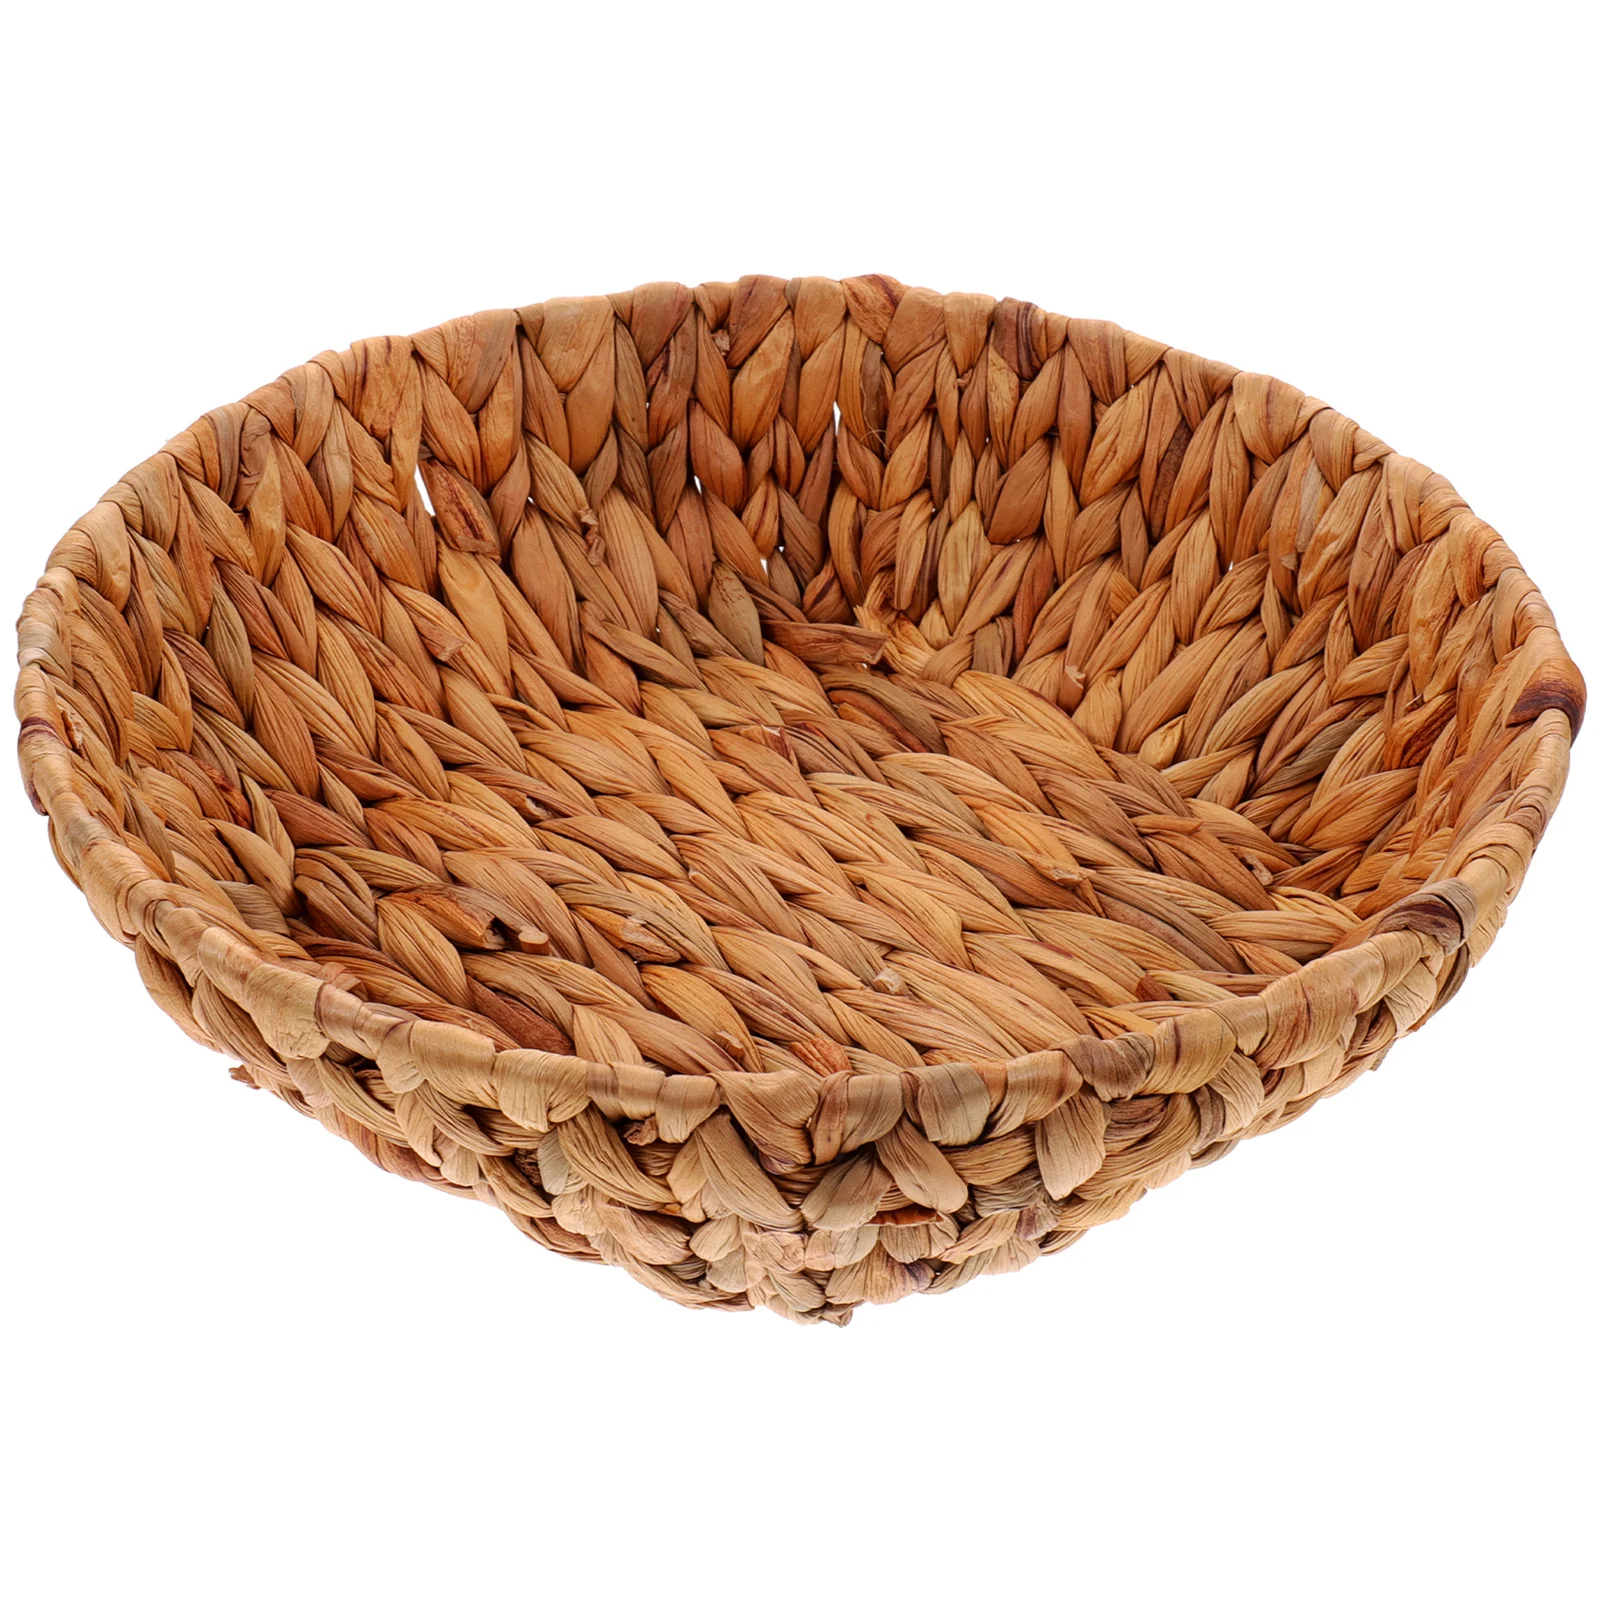 

Zero Round Woven Storage Baskets Grass Storage Dried Nut Fruit Organizer Container Vegetables Serving Basket